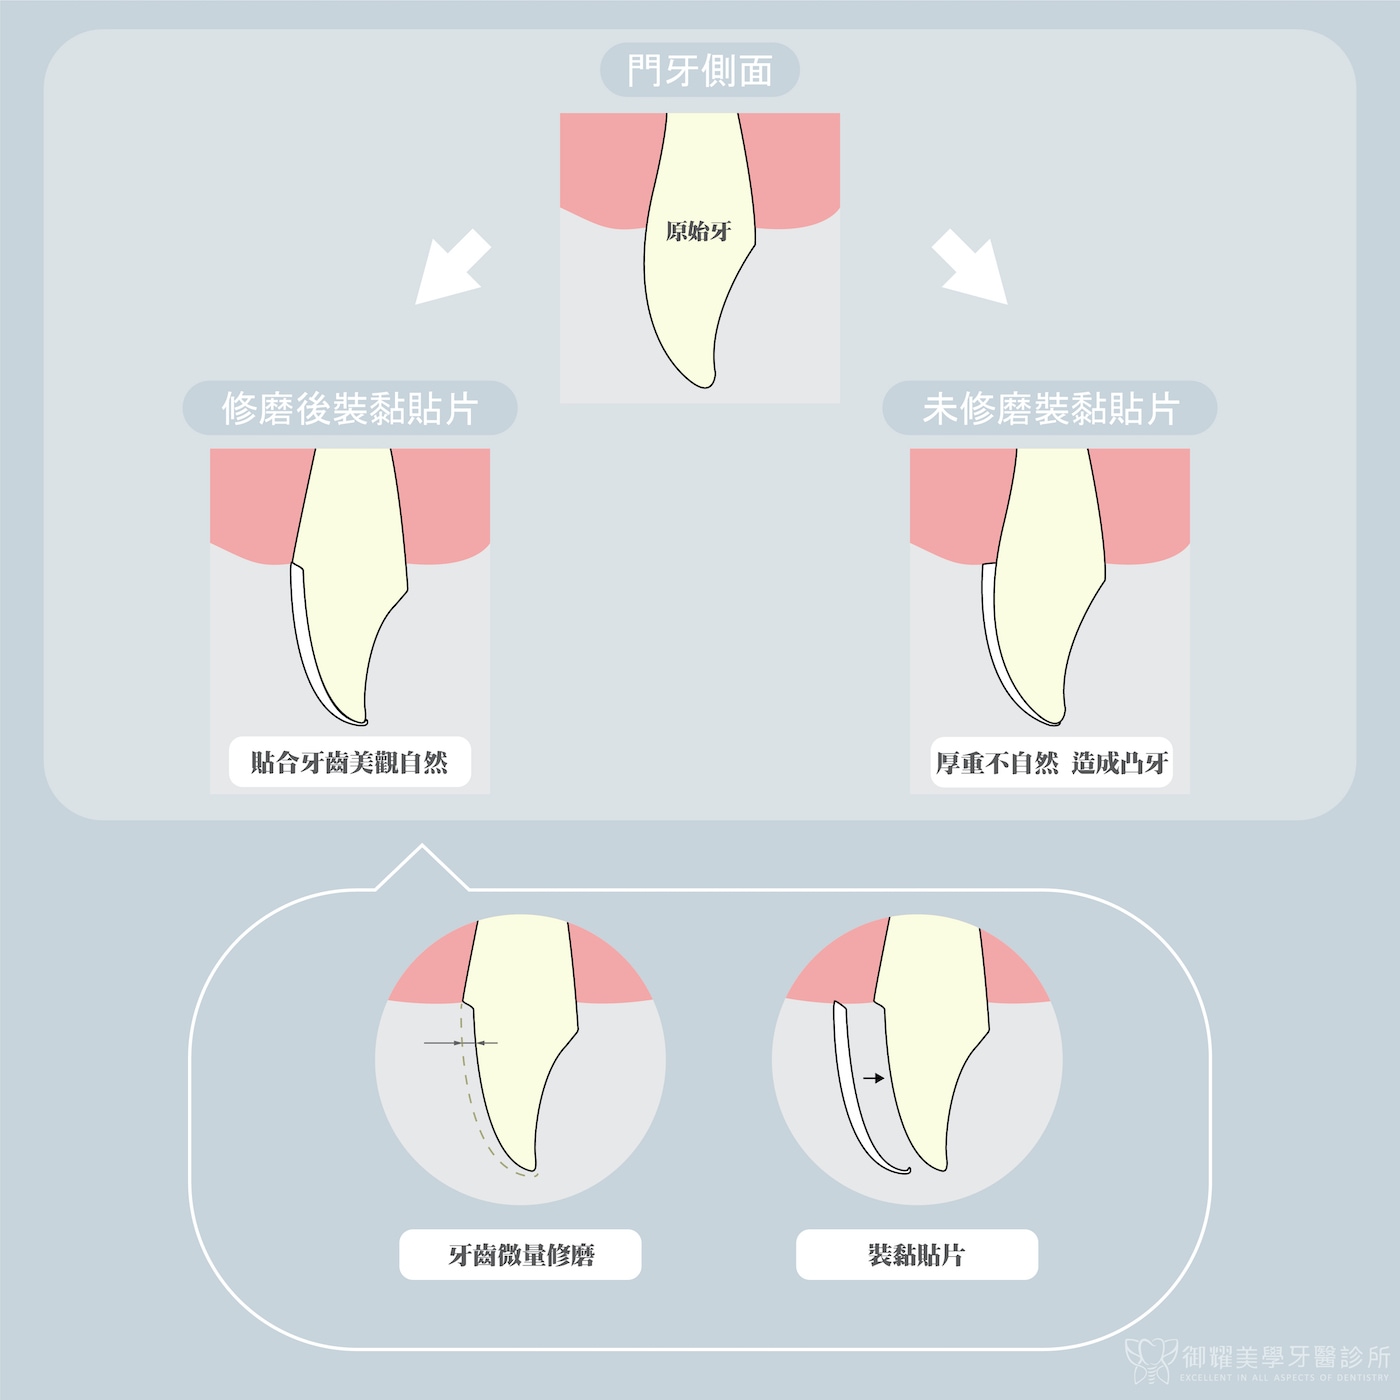 陶瓷貼片磨牙與未磨牙的比較示意圖：微量磨牙創造出貼片空間，貼片將貼合牙齒，外觀自然美觀；未磨牙直接裝戴貼片，會導致外觀厚重不自然